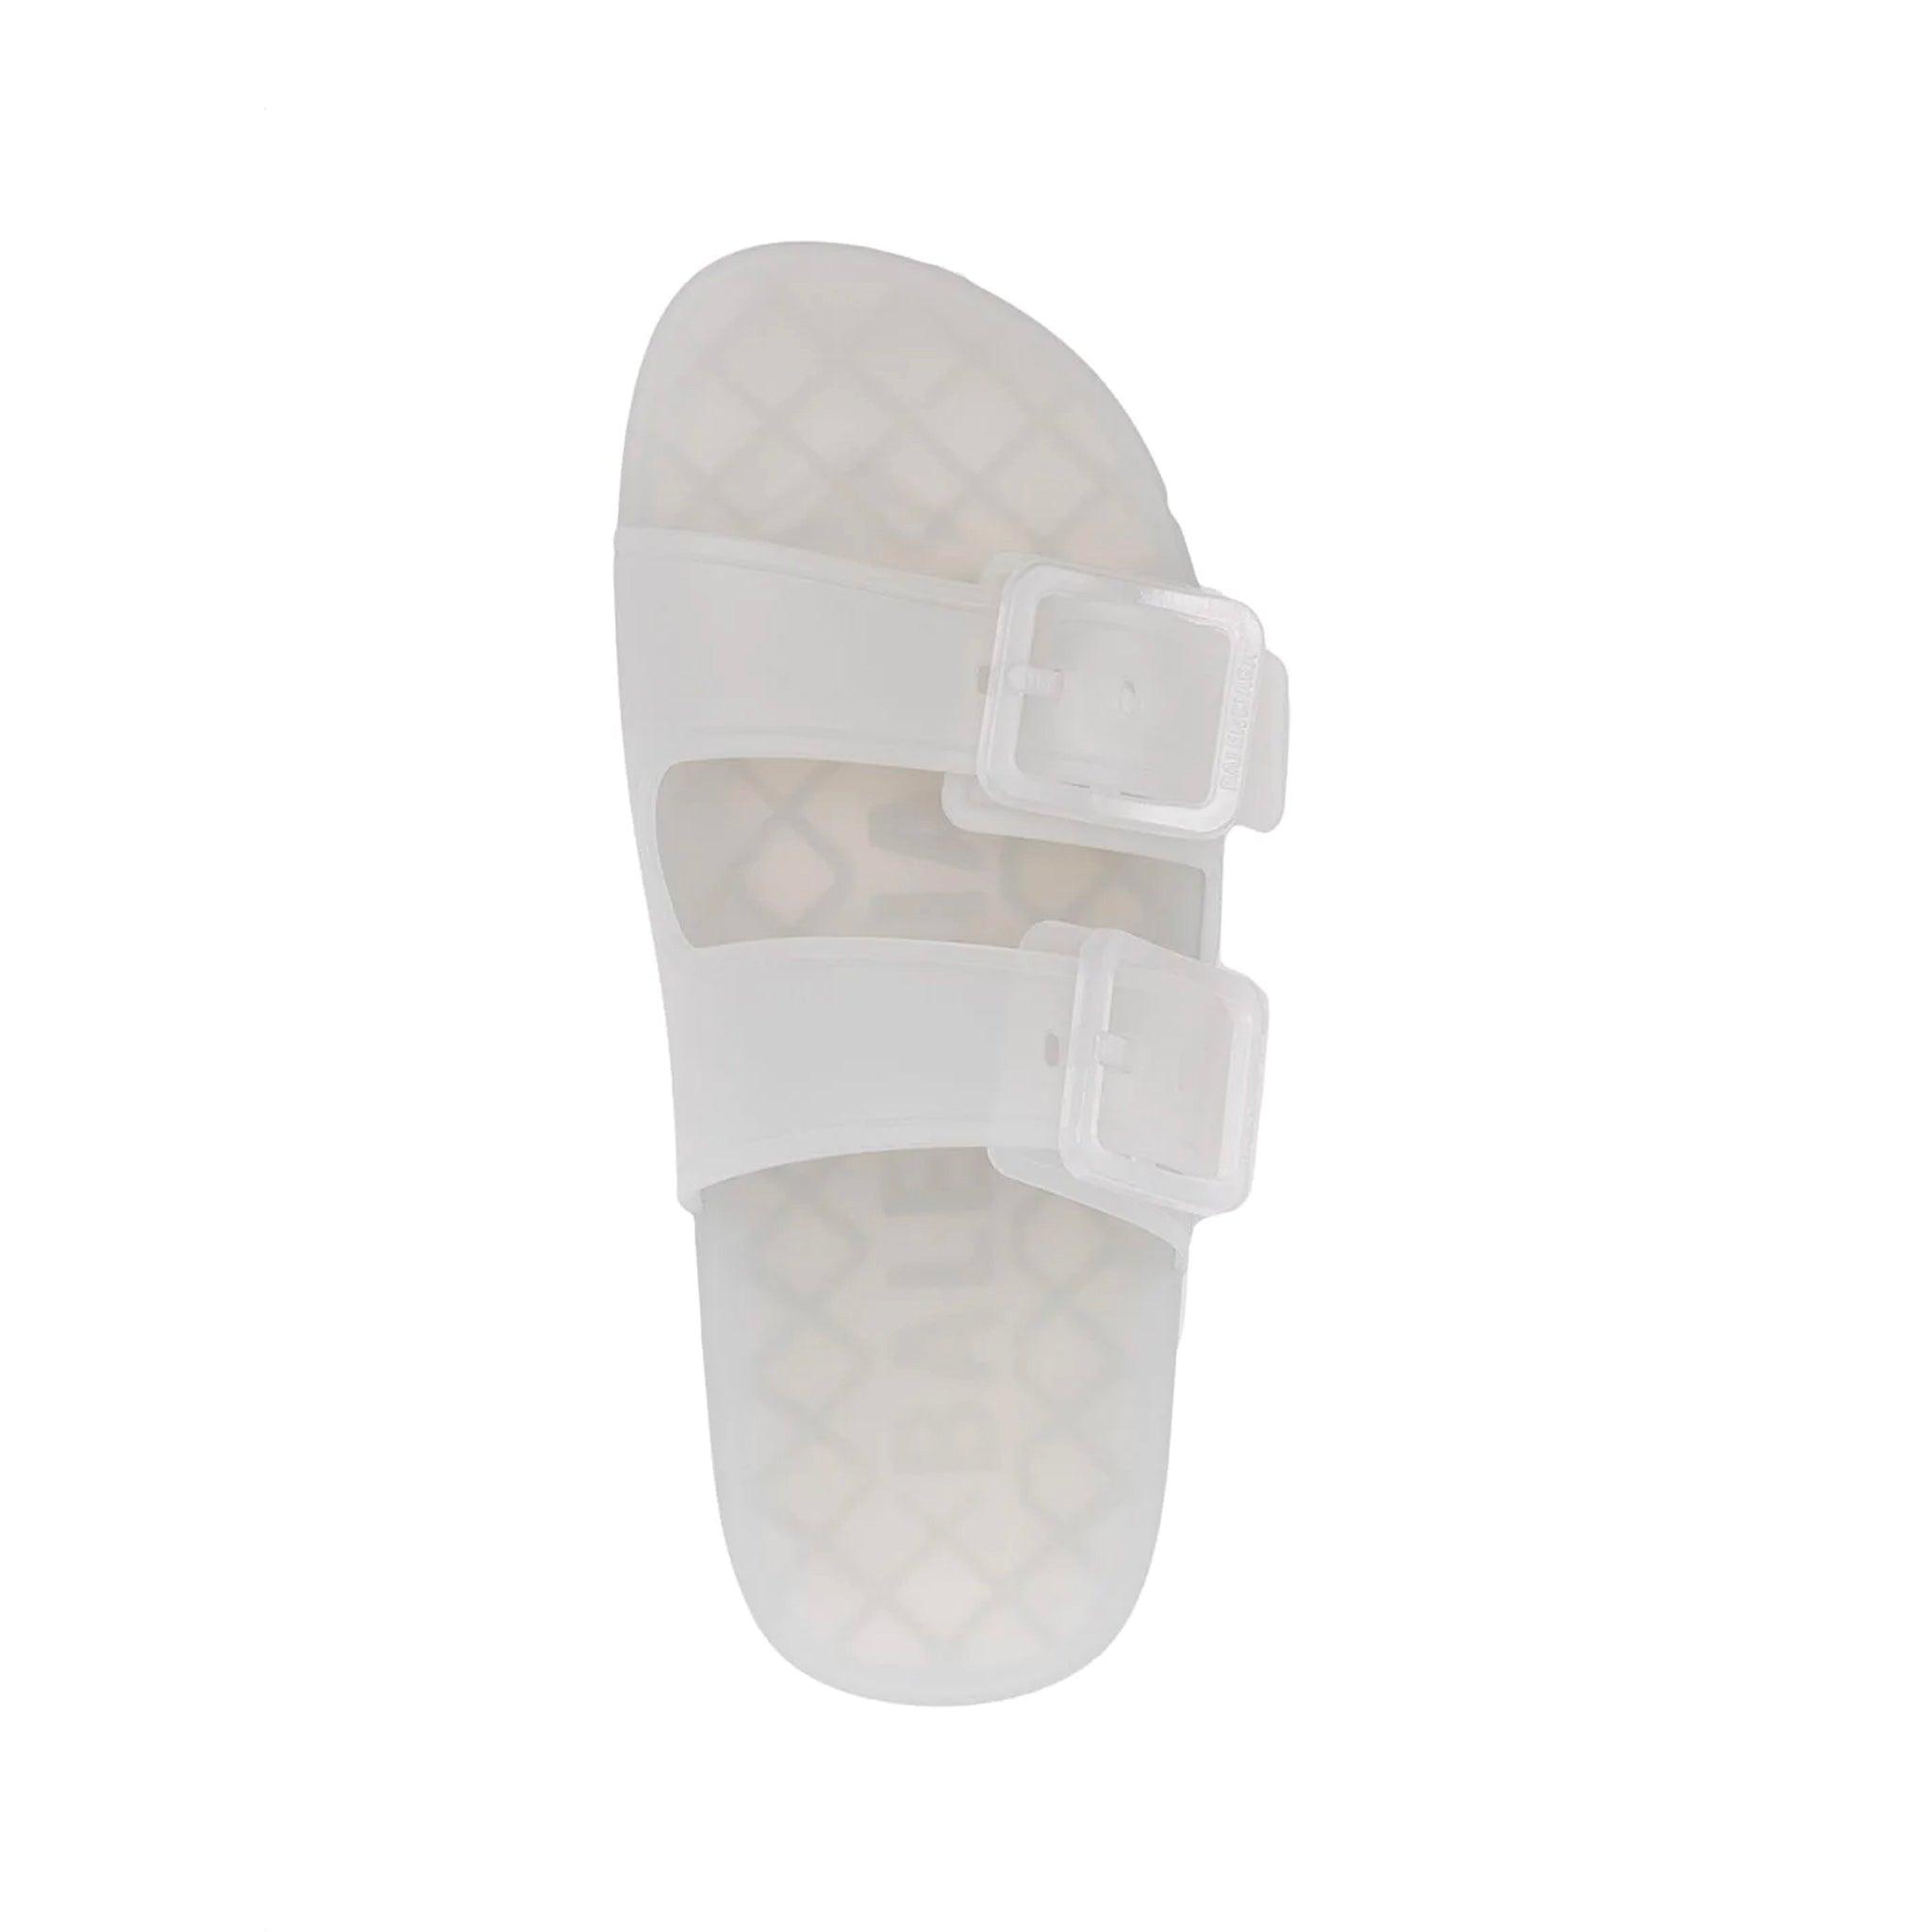 Balenciaga Rubber Mallorca Jelly Sandals in White - Save 1% | Lyst